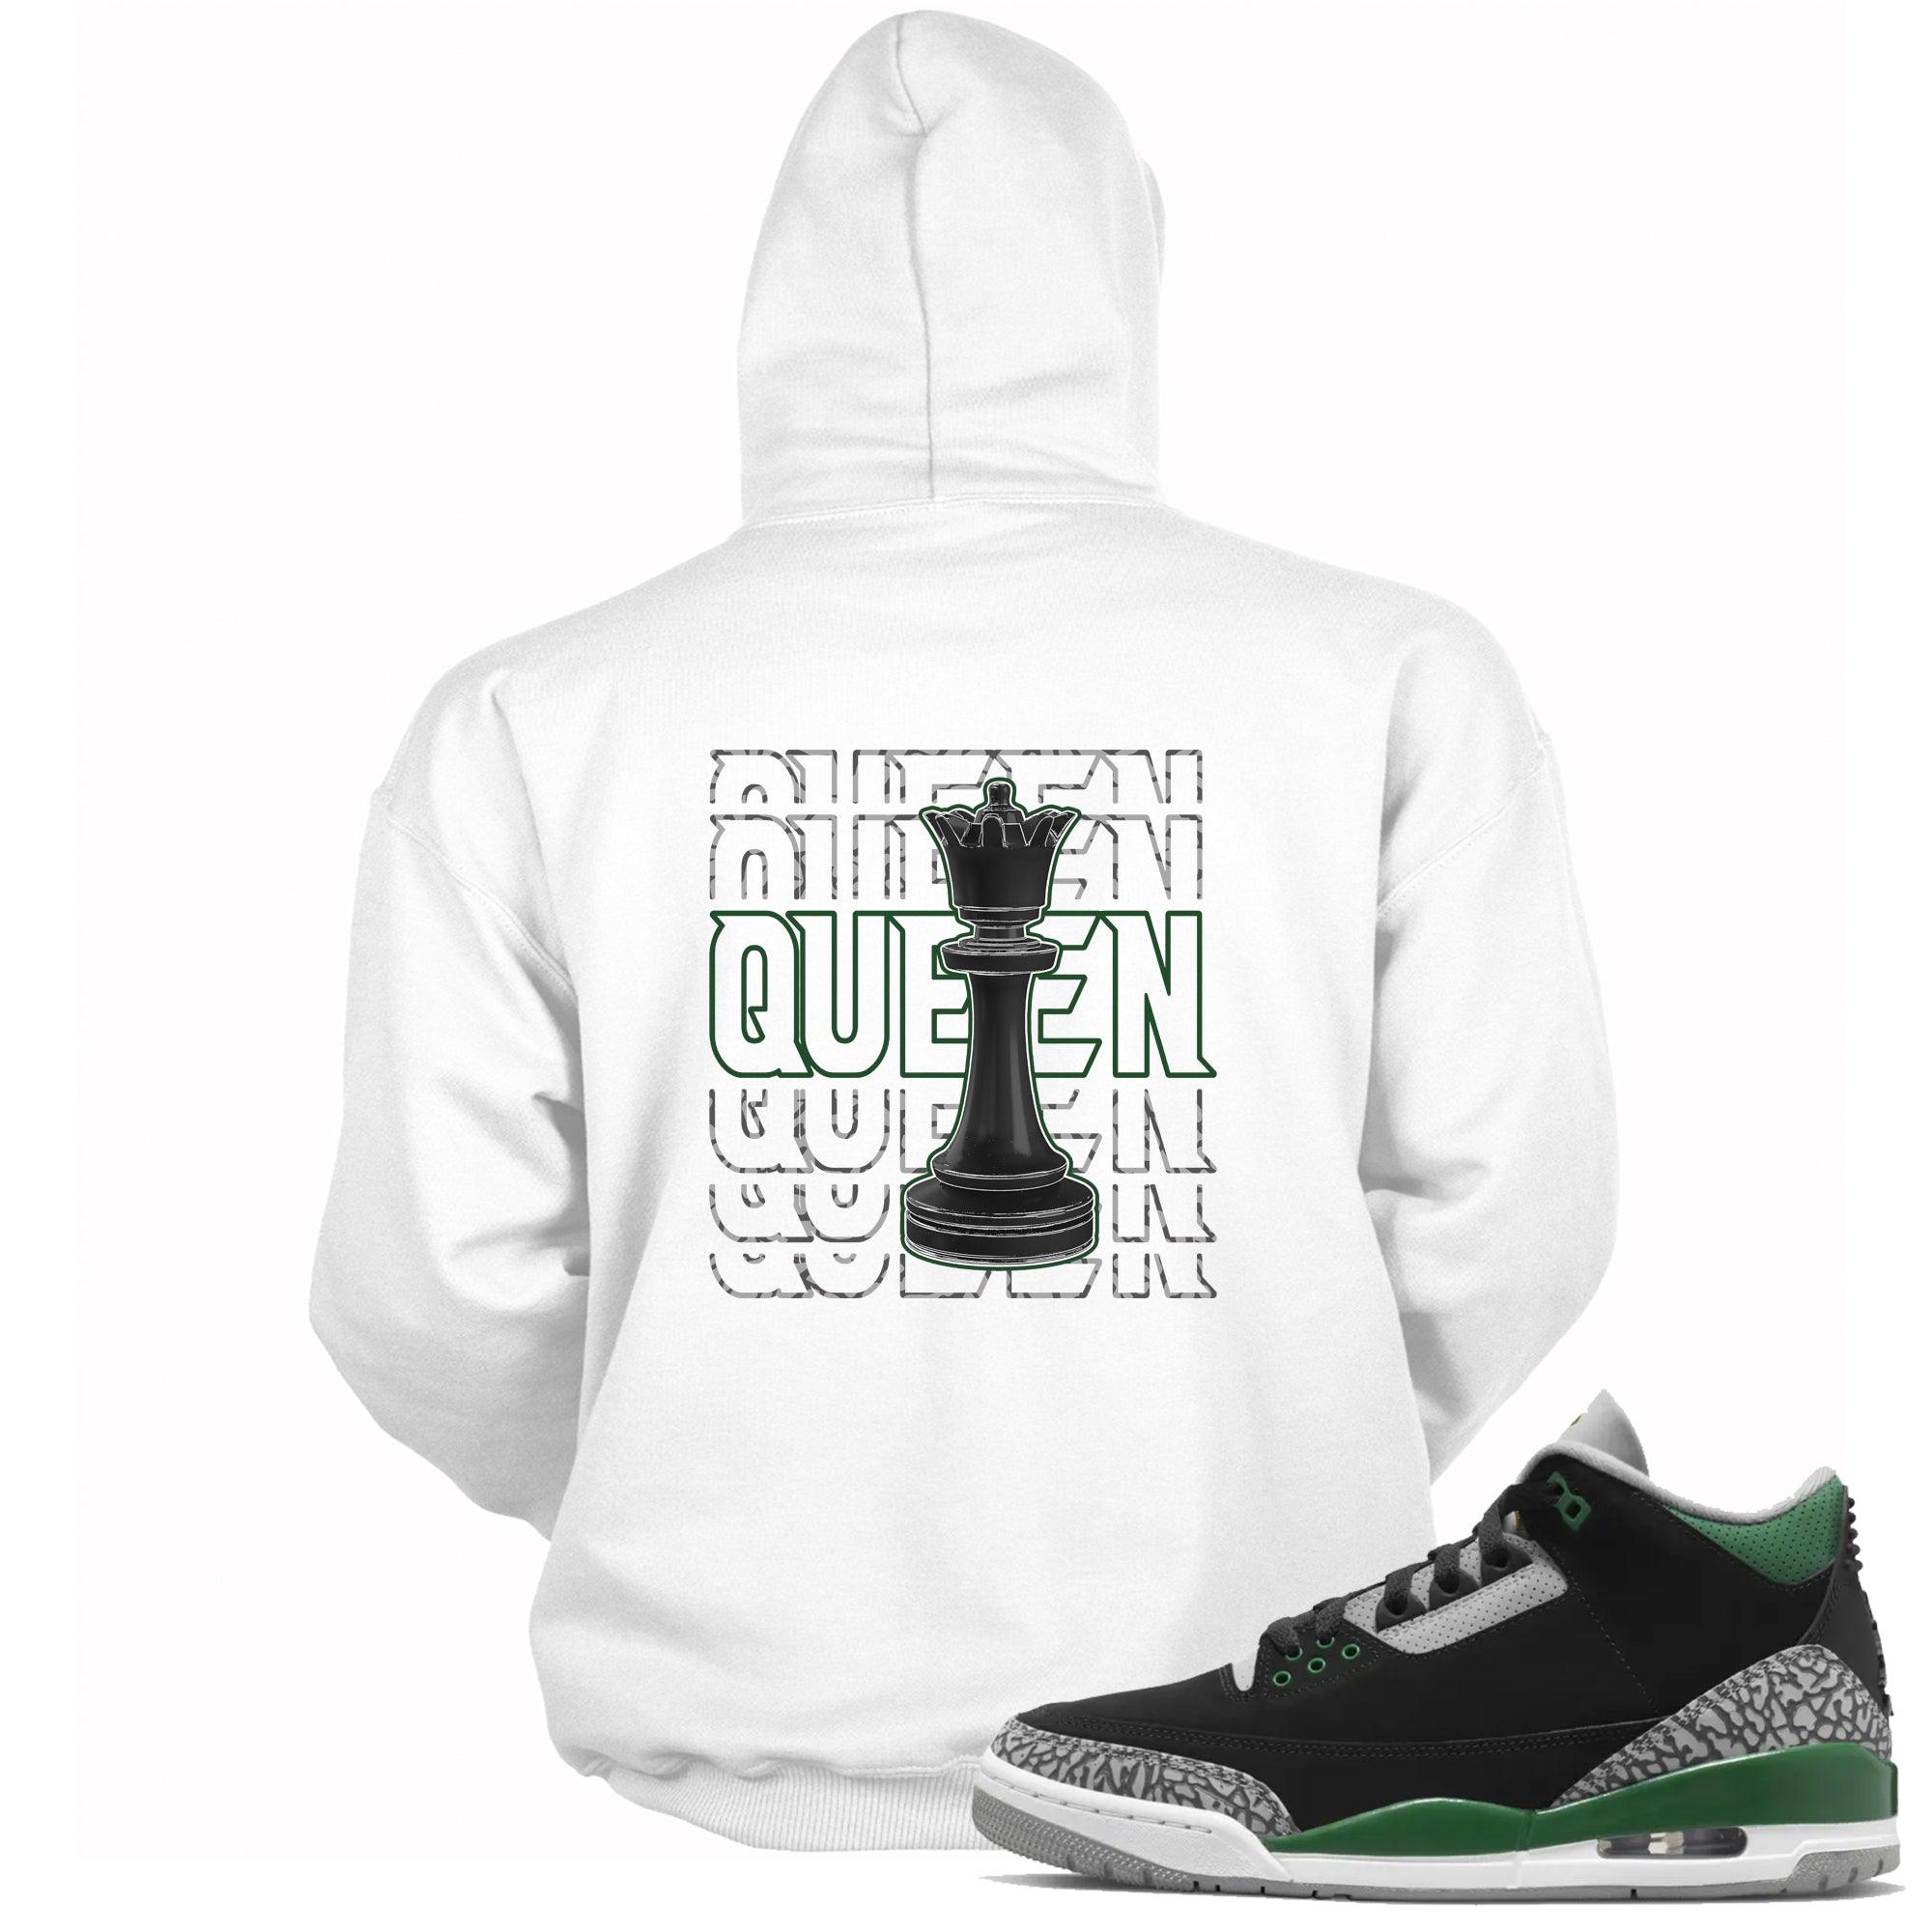 Queen Hoodie Jordan 3s Pine Green photo